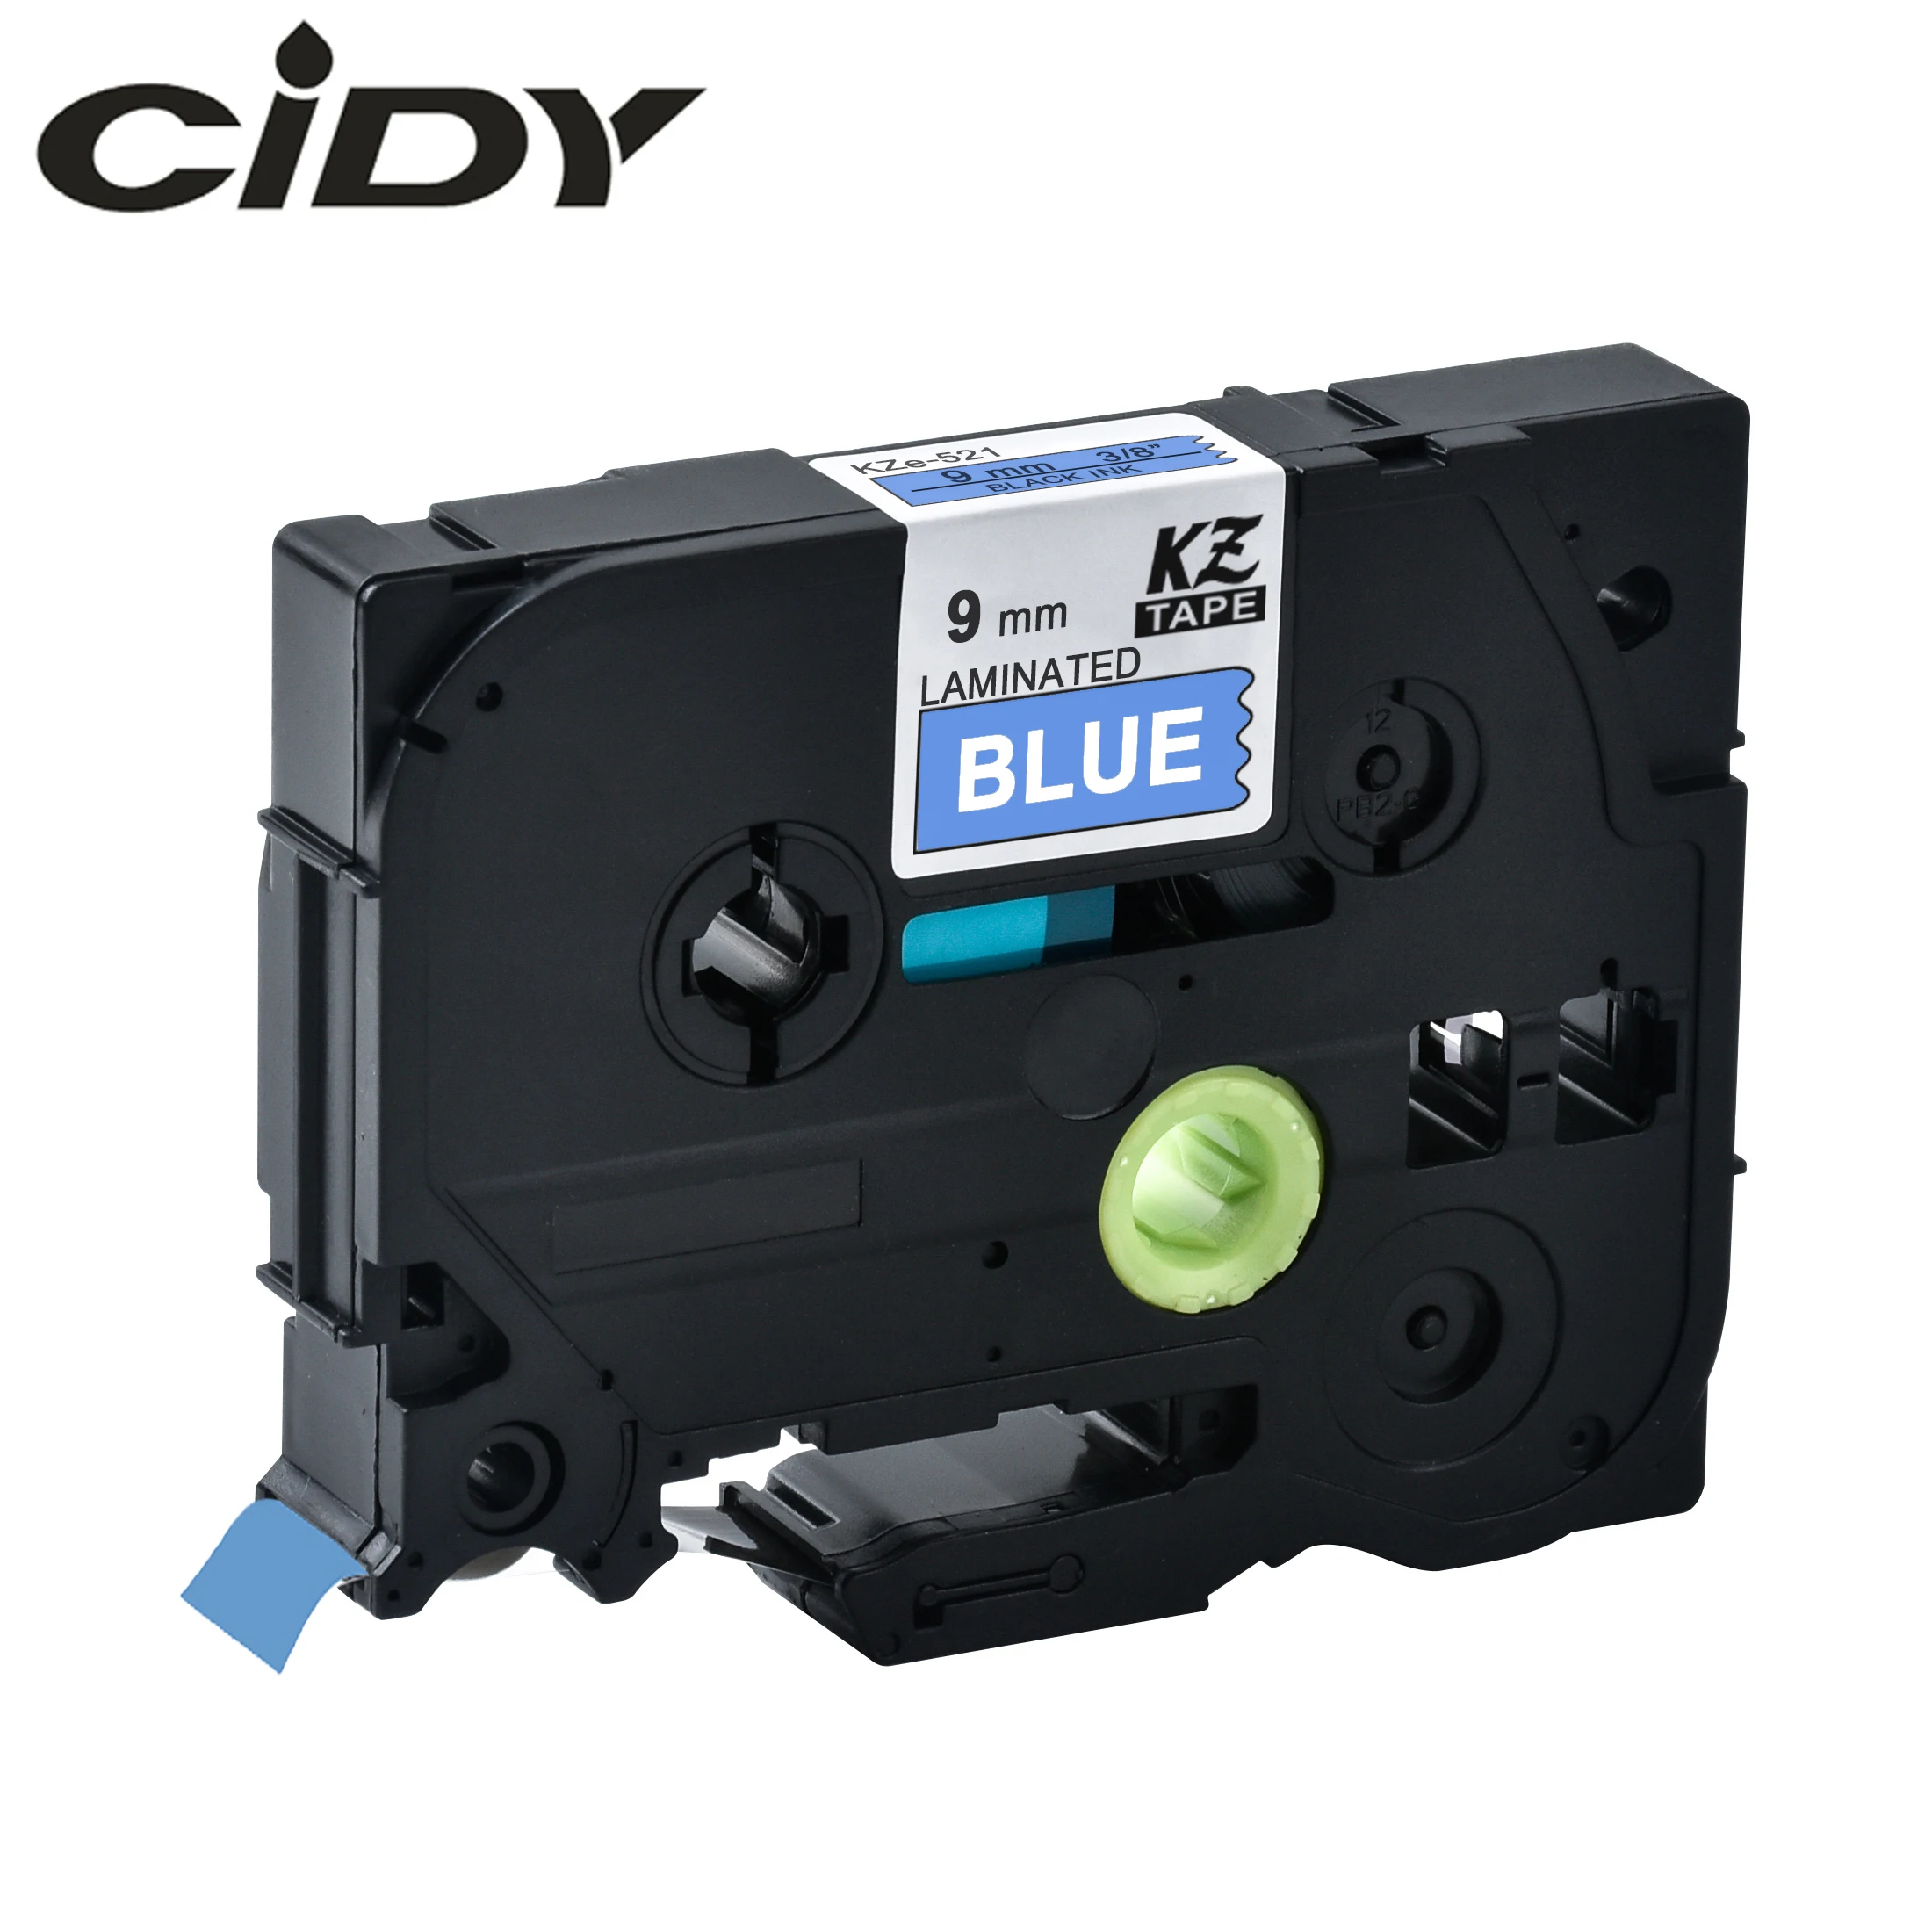 

CIDY Tze 525 Tz525 white on blue Laminated Compatible P touch 9mm tze-525 tz-525 tze525 Label Tape Cassette Cartridge